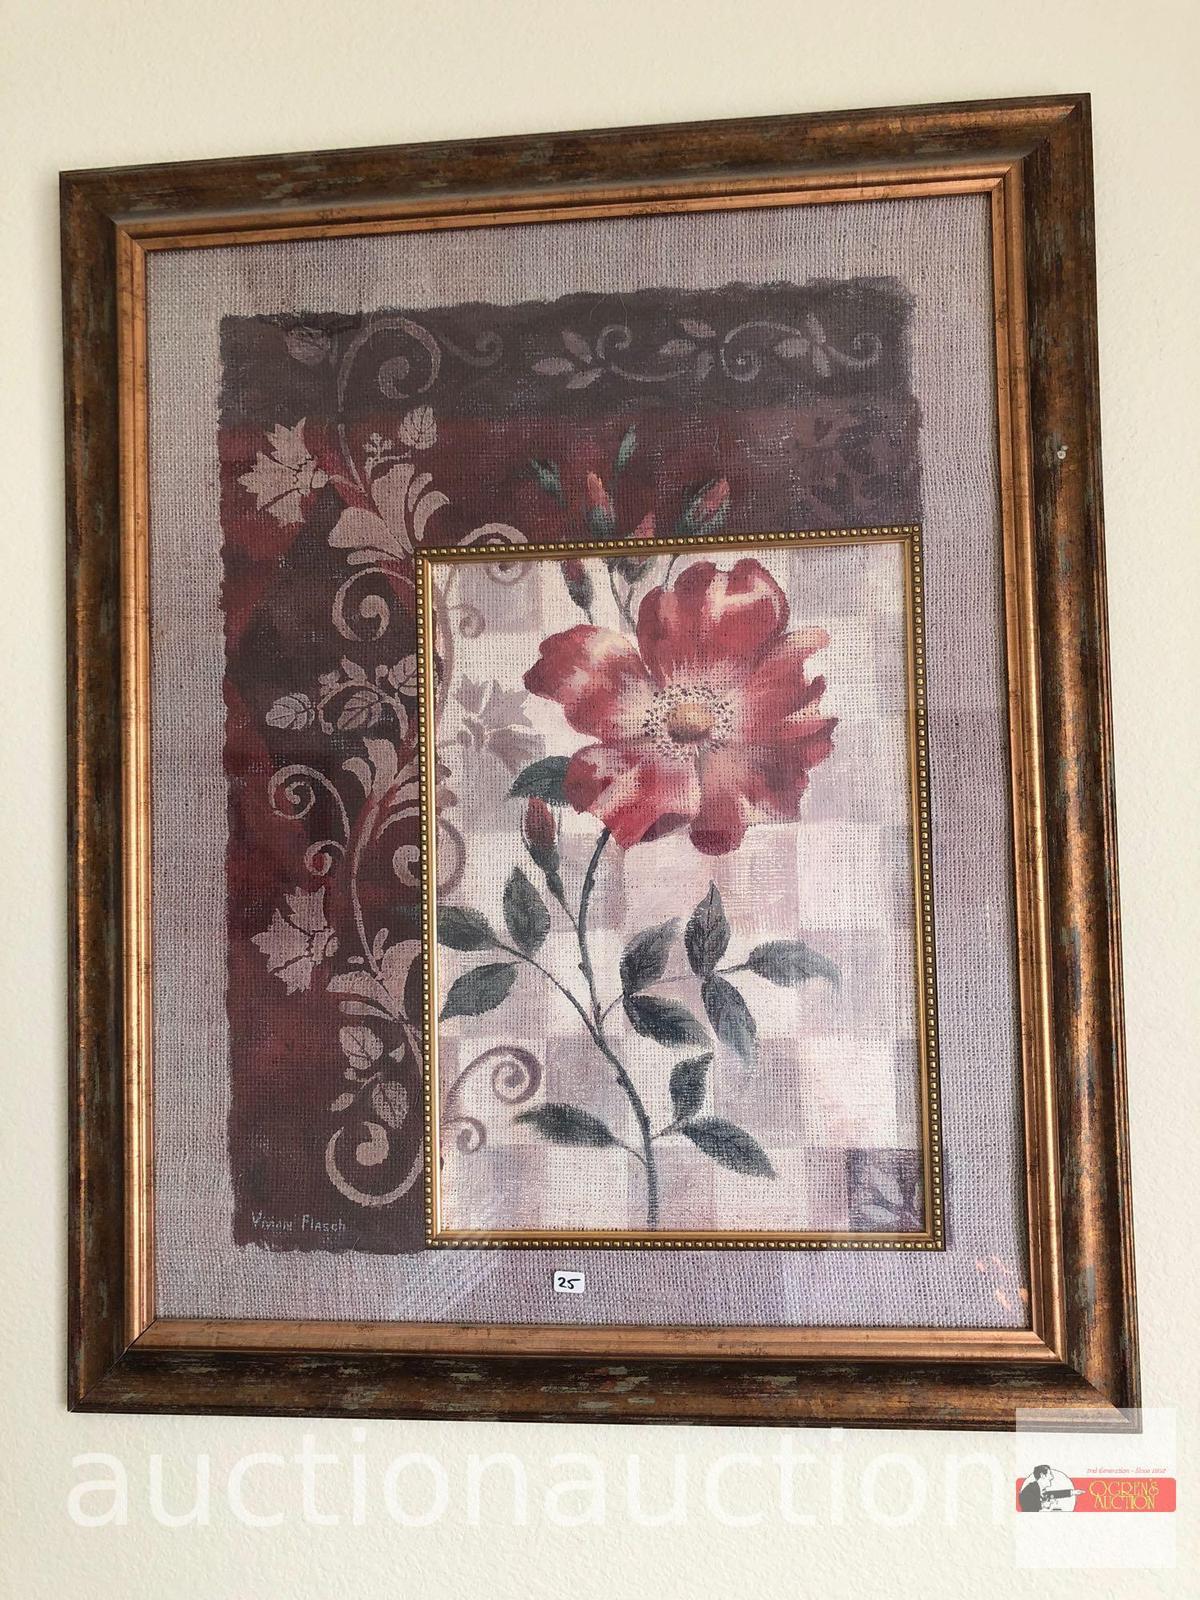 Artwork - print, floral by Vivian Flasch, framed & matted, 27"wx32.5"hx1.5"d